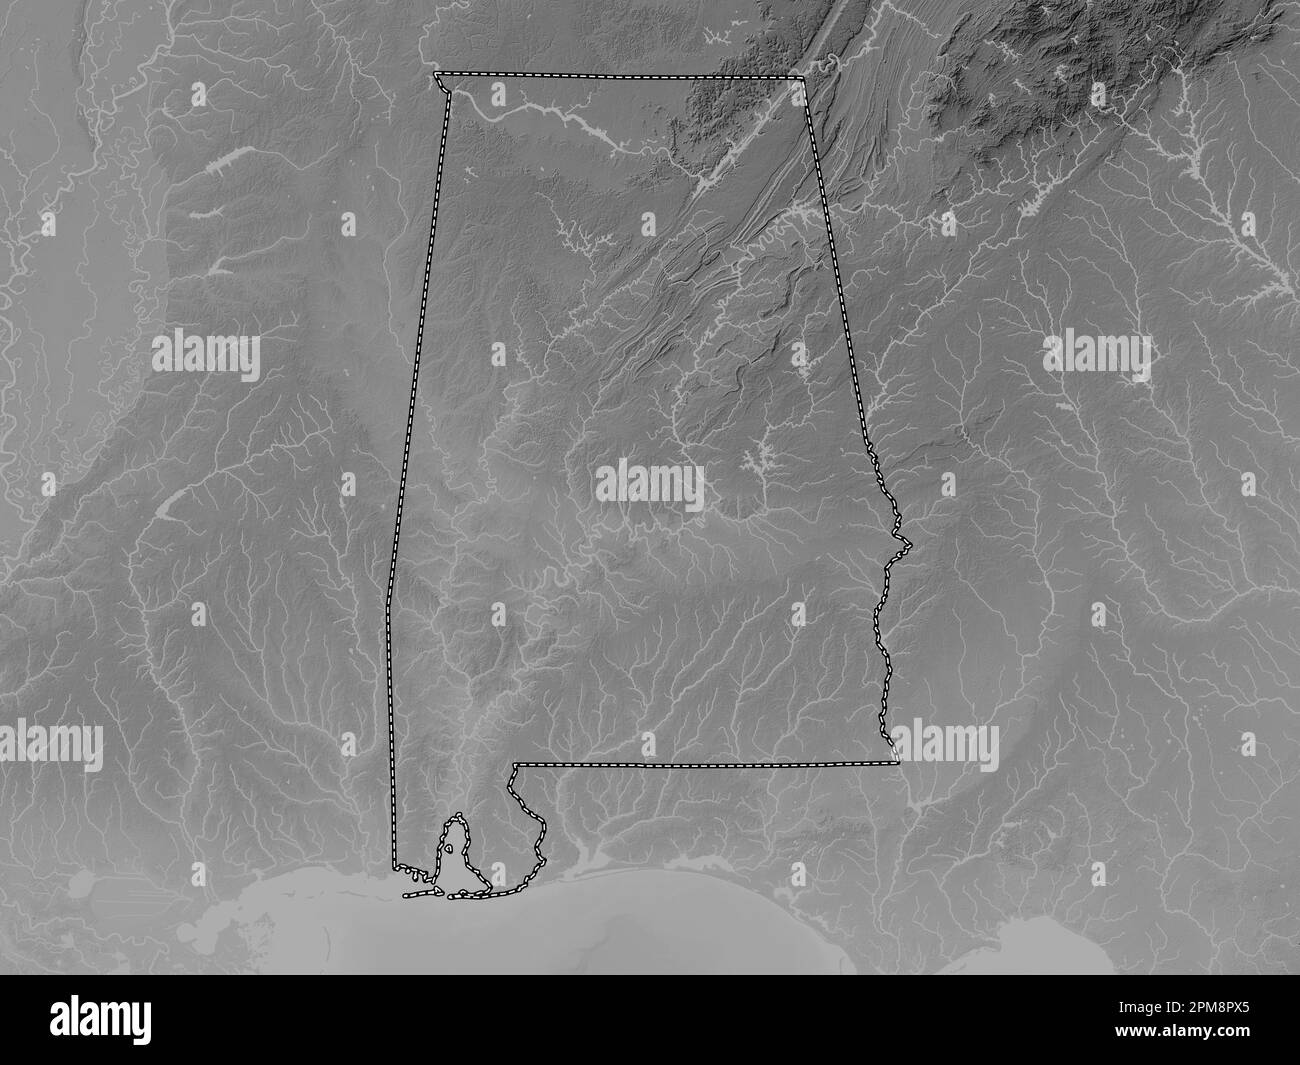 Alabama, Bundesstaat der Vereinigten Staaten von Amerika. Grauskala-Höhenkarte mit Seen und Flüssen Stockfoto